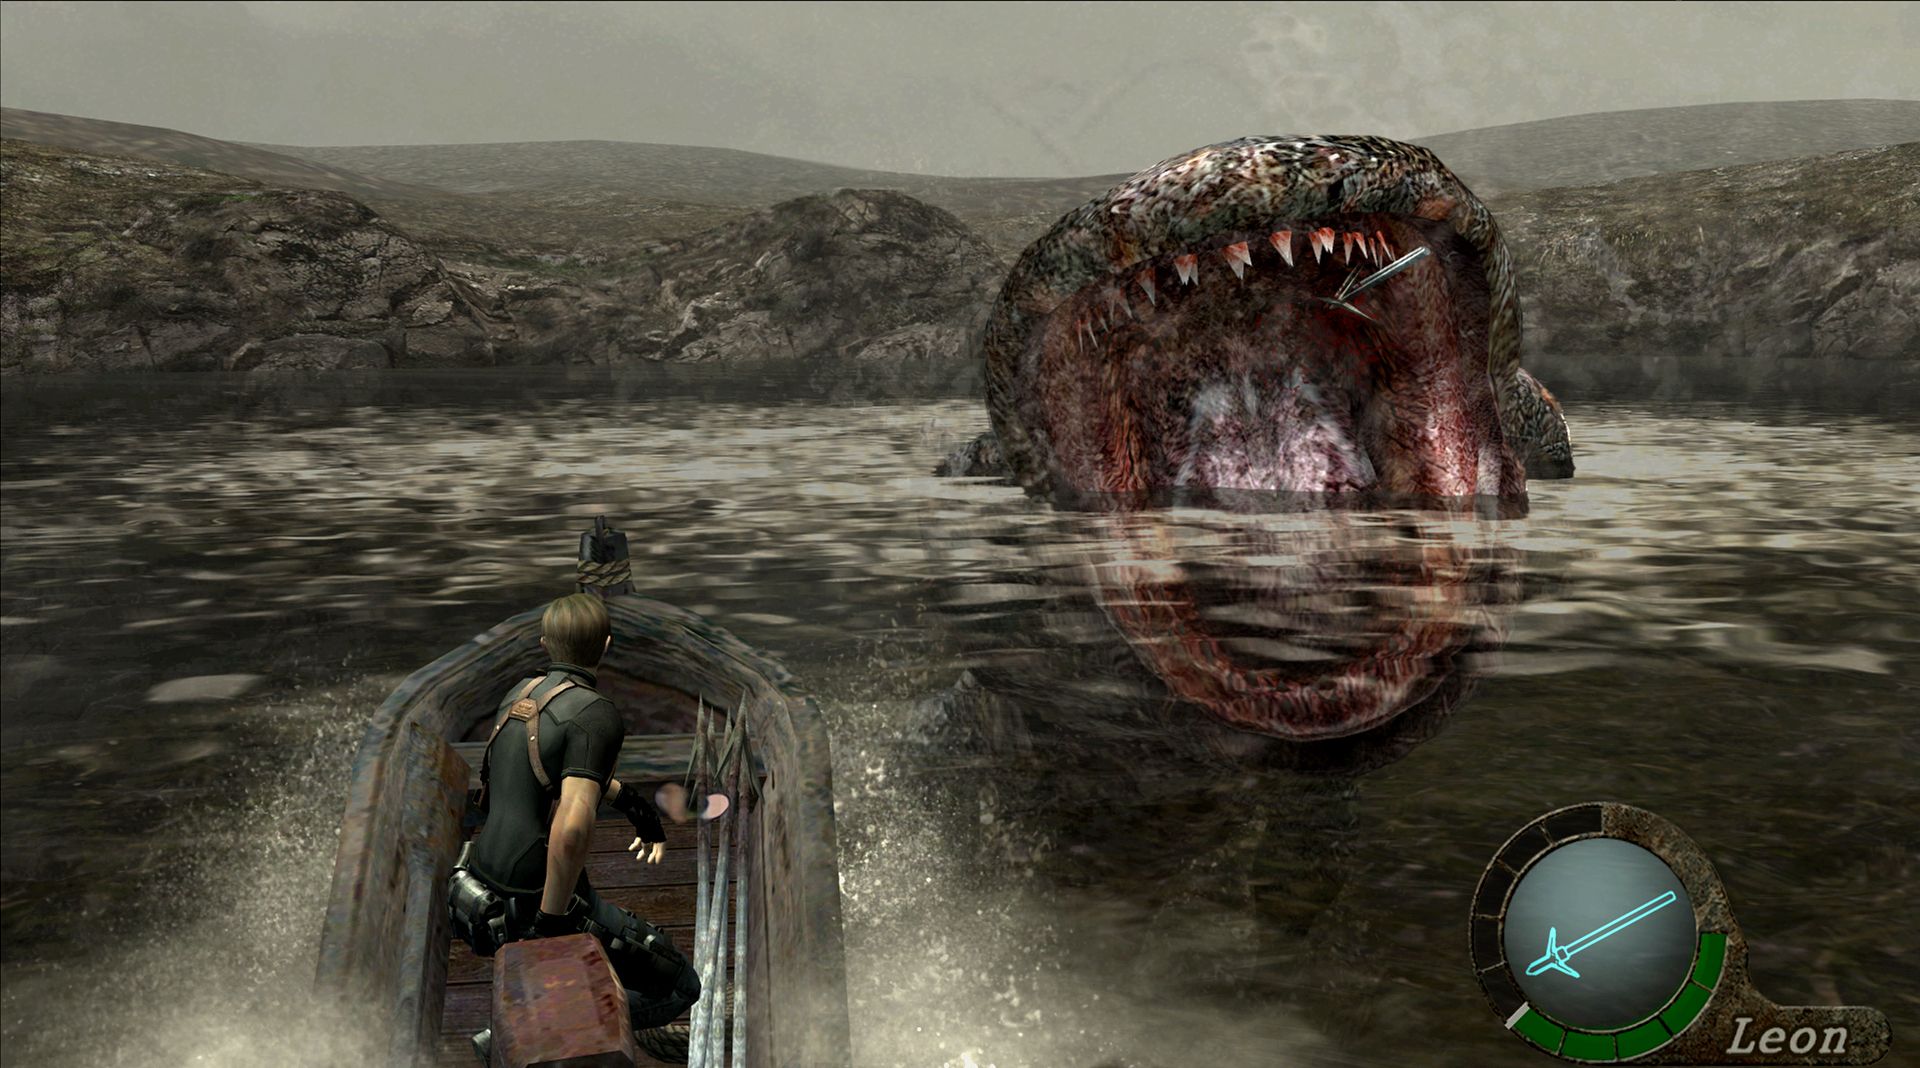 Resident Evil 4: 10 Best Video Games It Inspired